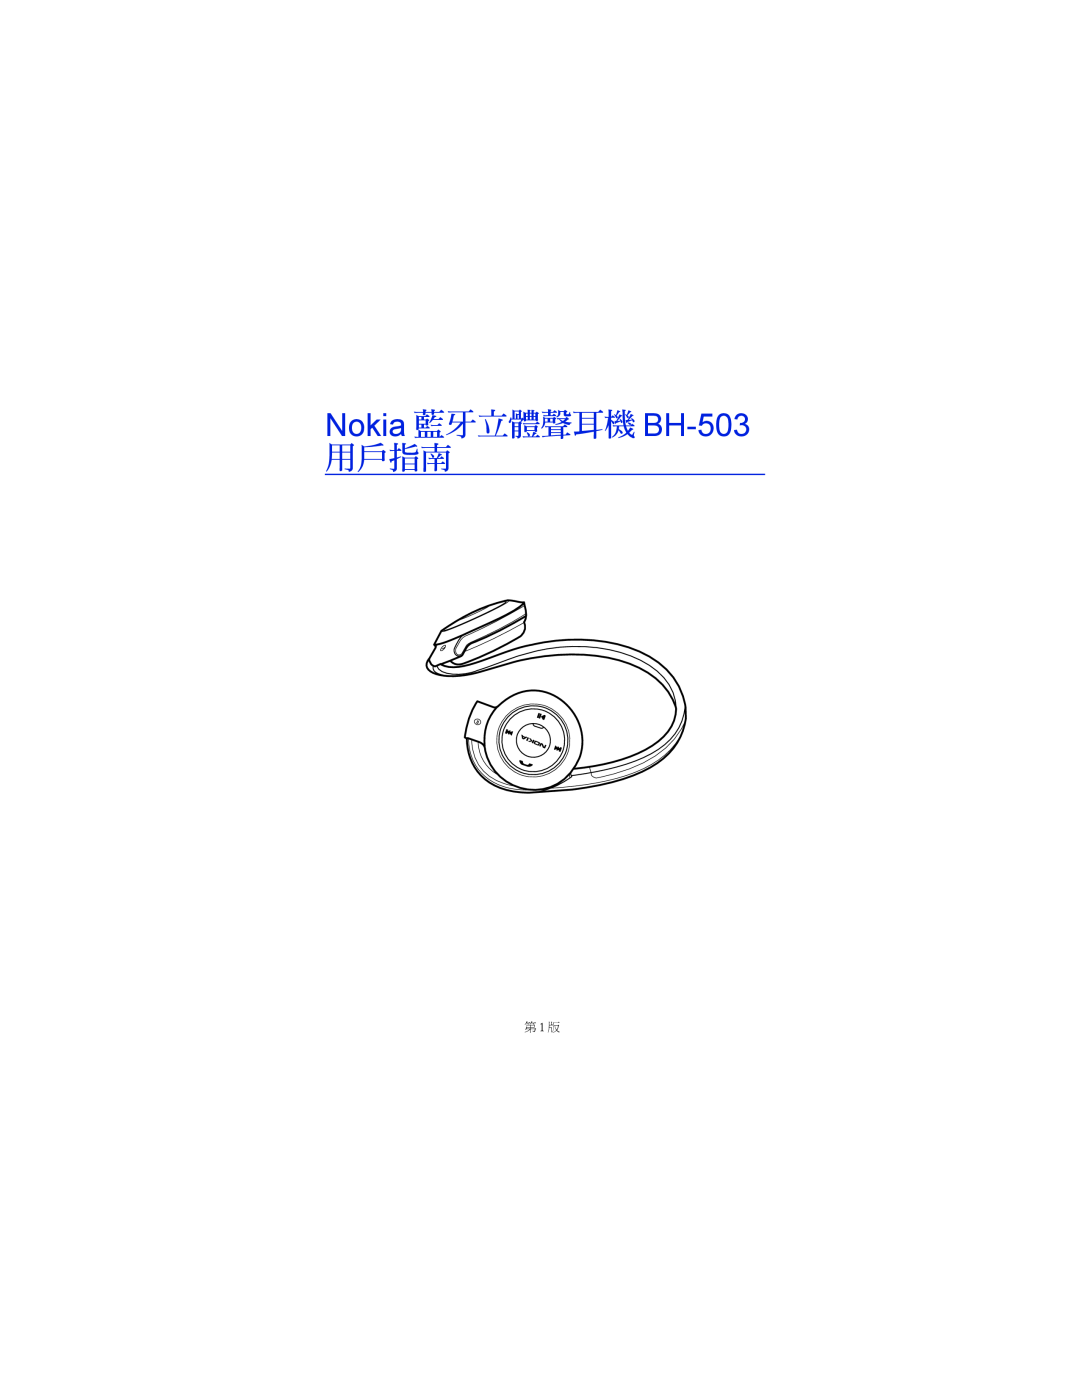 Nokia manual Nokia 藍牙立體聲耳機 BH-503, 用戶指南, 第 1 版 